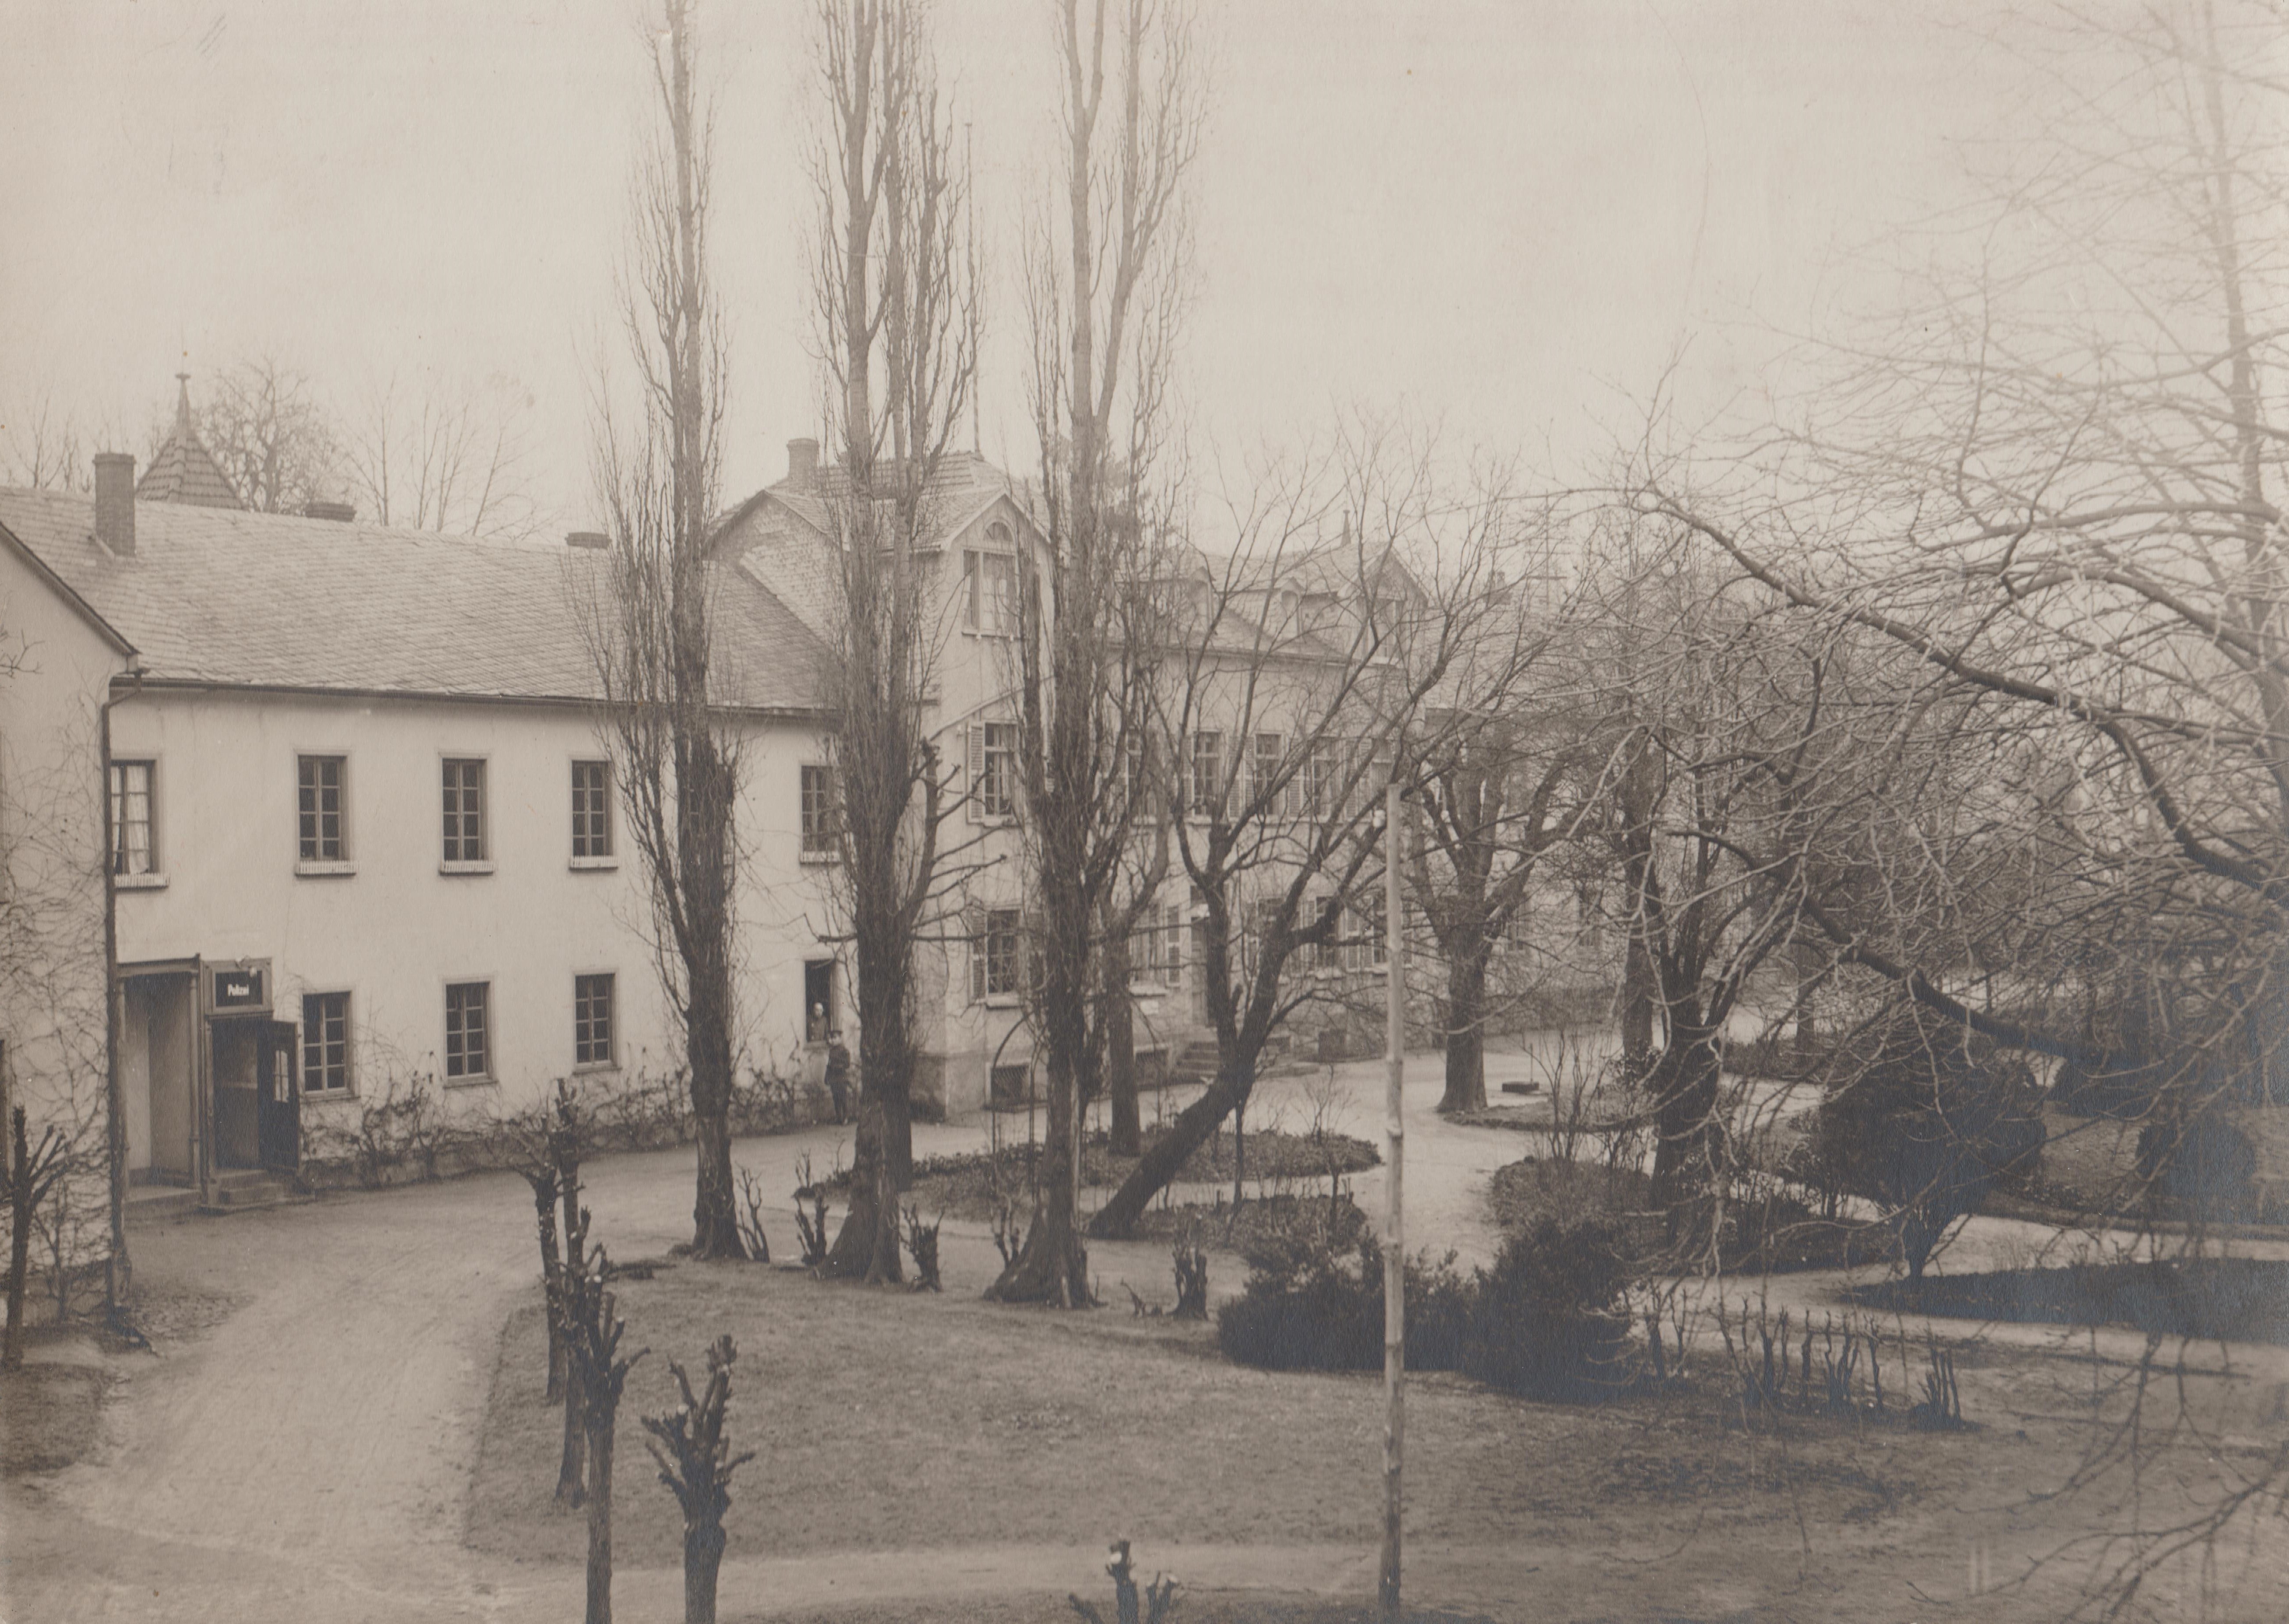 Dr. Erlenmeyer’sche Heilanstalten, Bendorf am Rhein 1921/22 (REM CC BY-NC-SA)